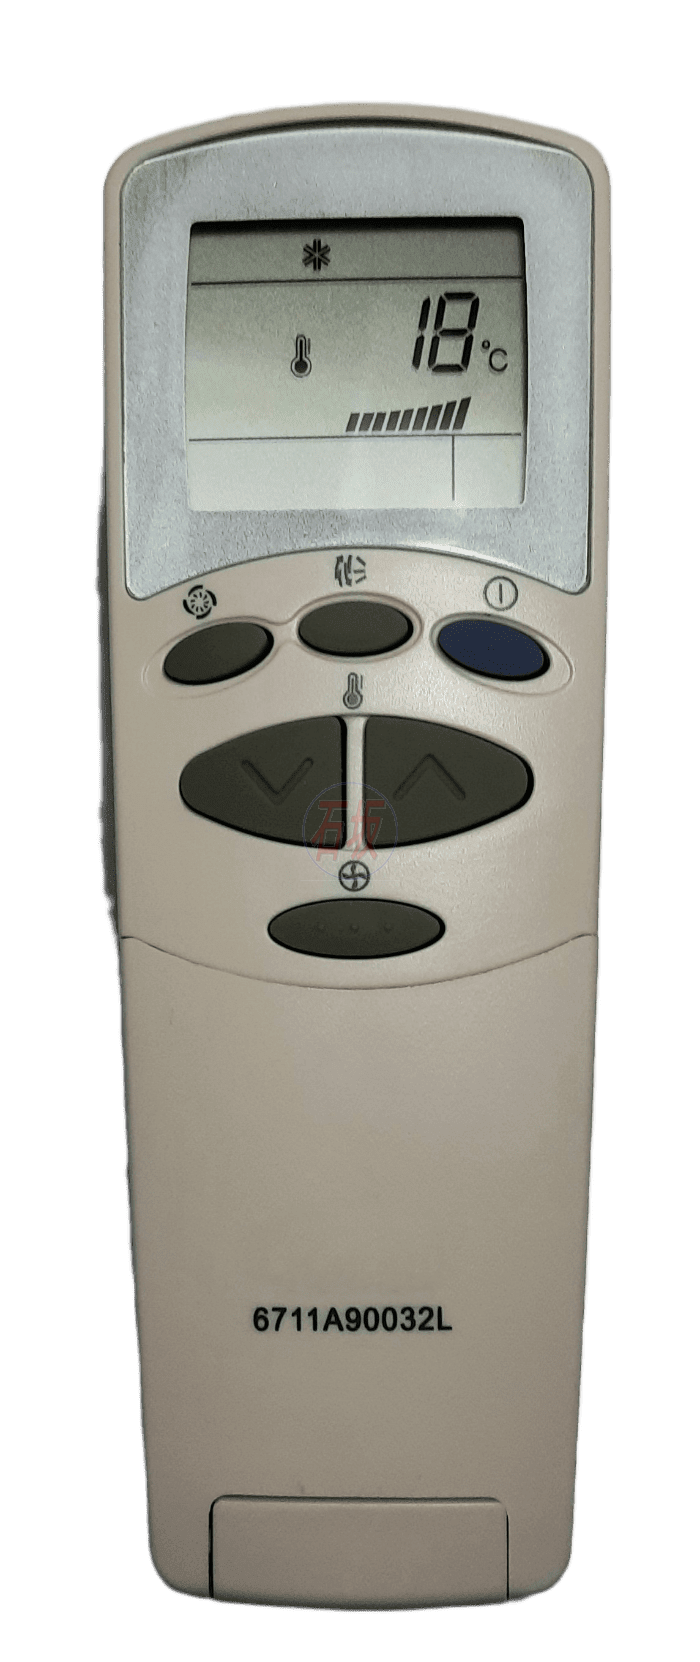 Controle remoto para ar condicionado LG 6711A90032L